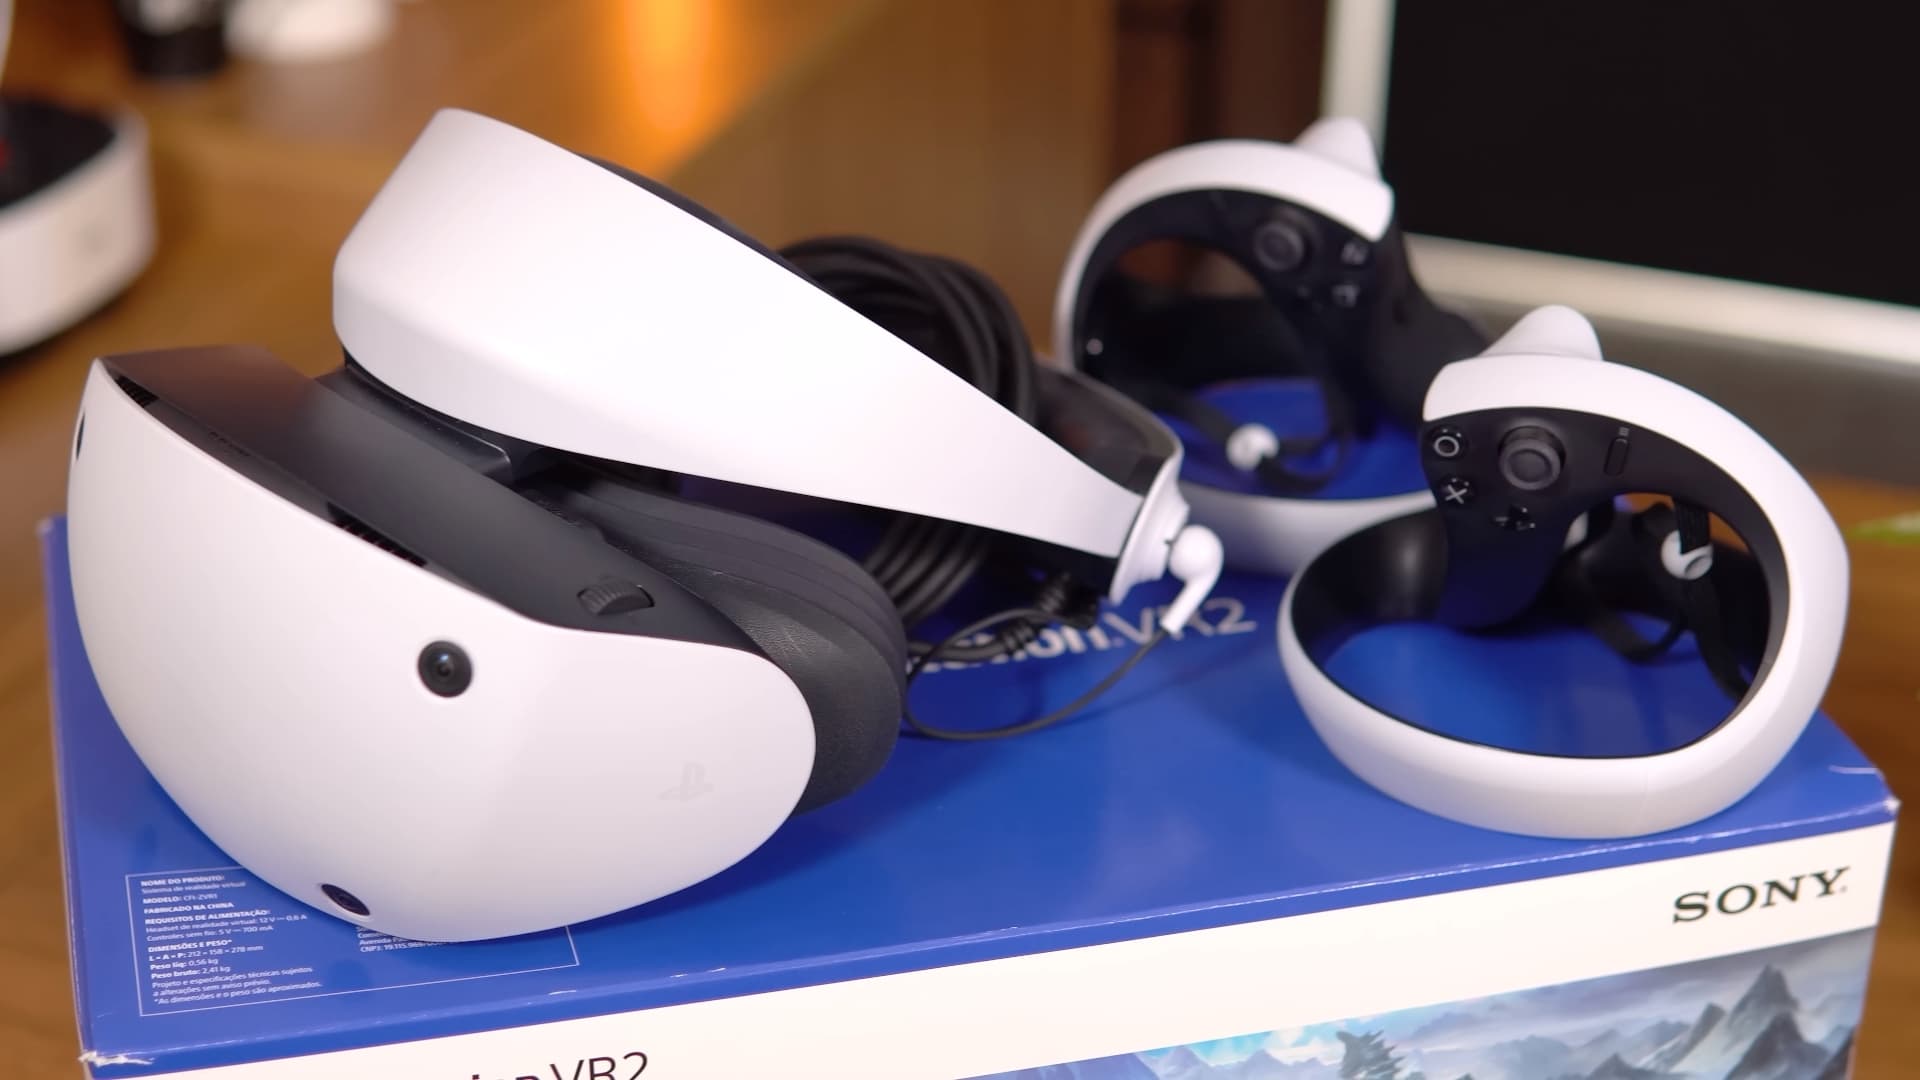 PlayStation VR2 é bom? Vale a pena? [REVIEW] - EscolhaSegura